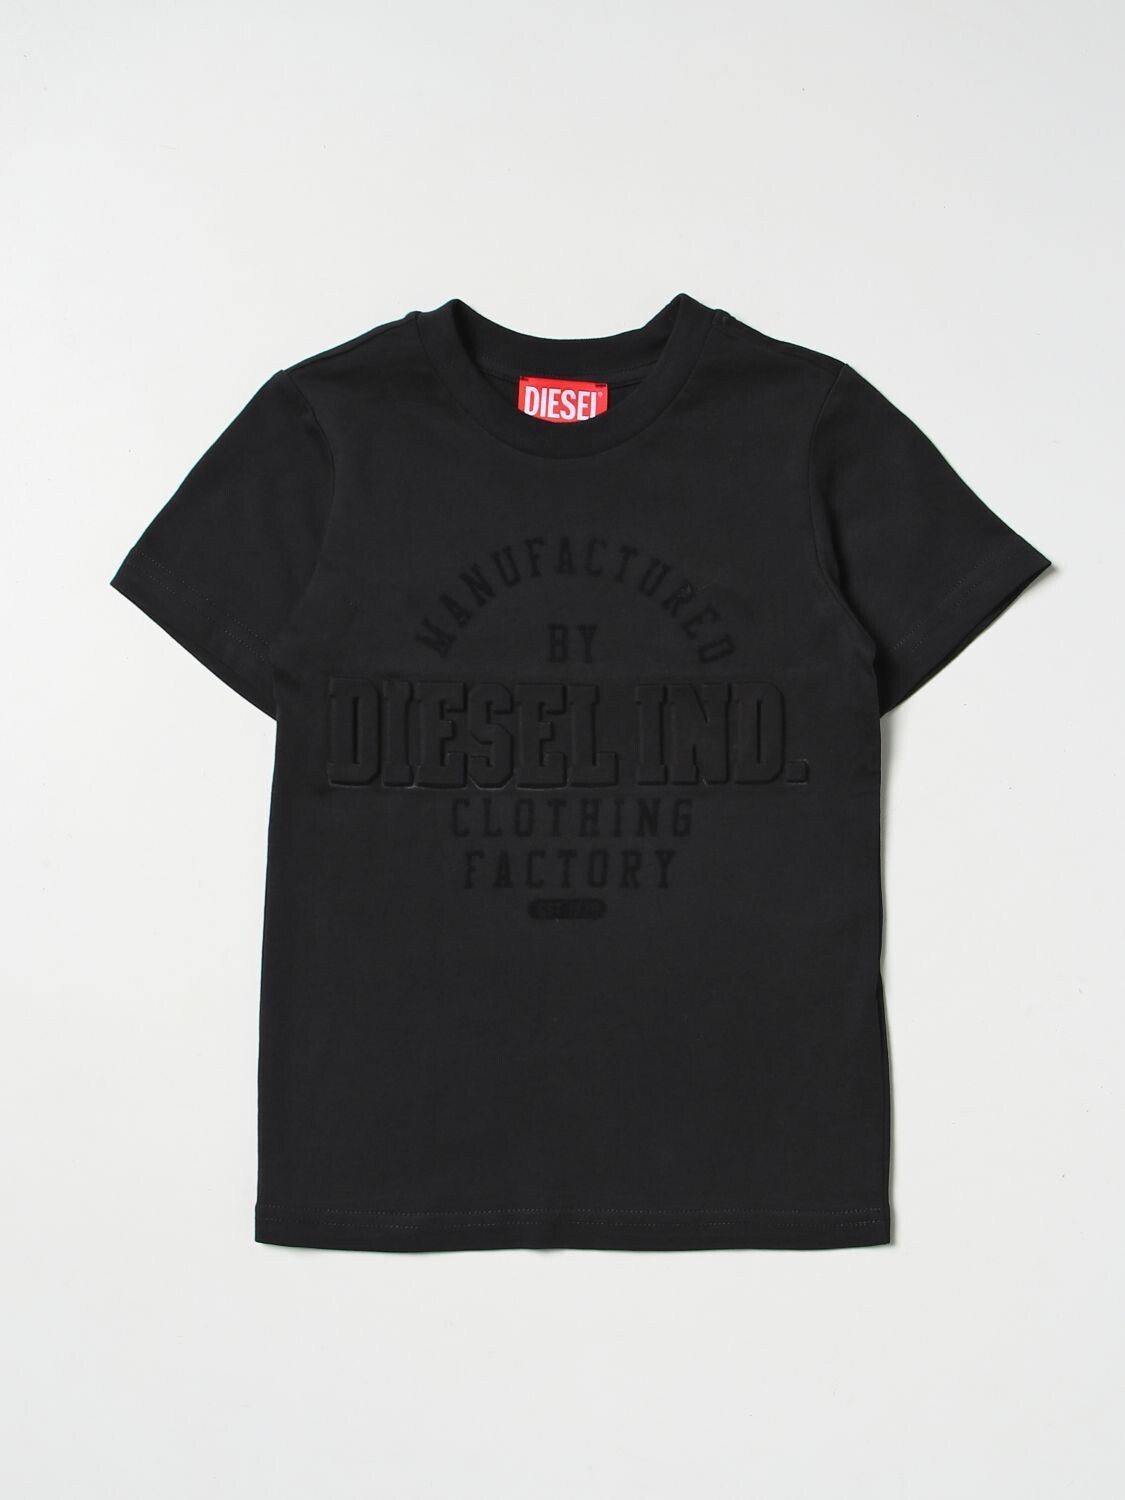 Diesel-t-shirt nera, size: 4 anni